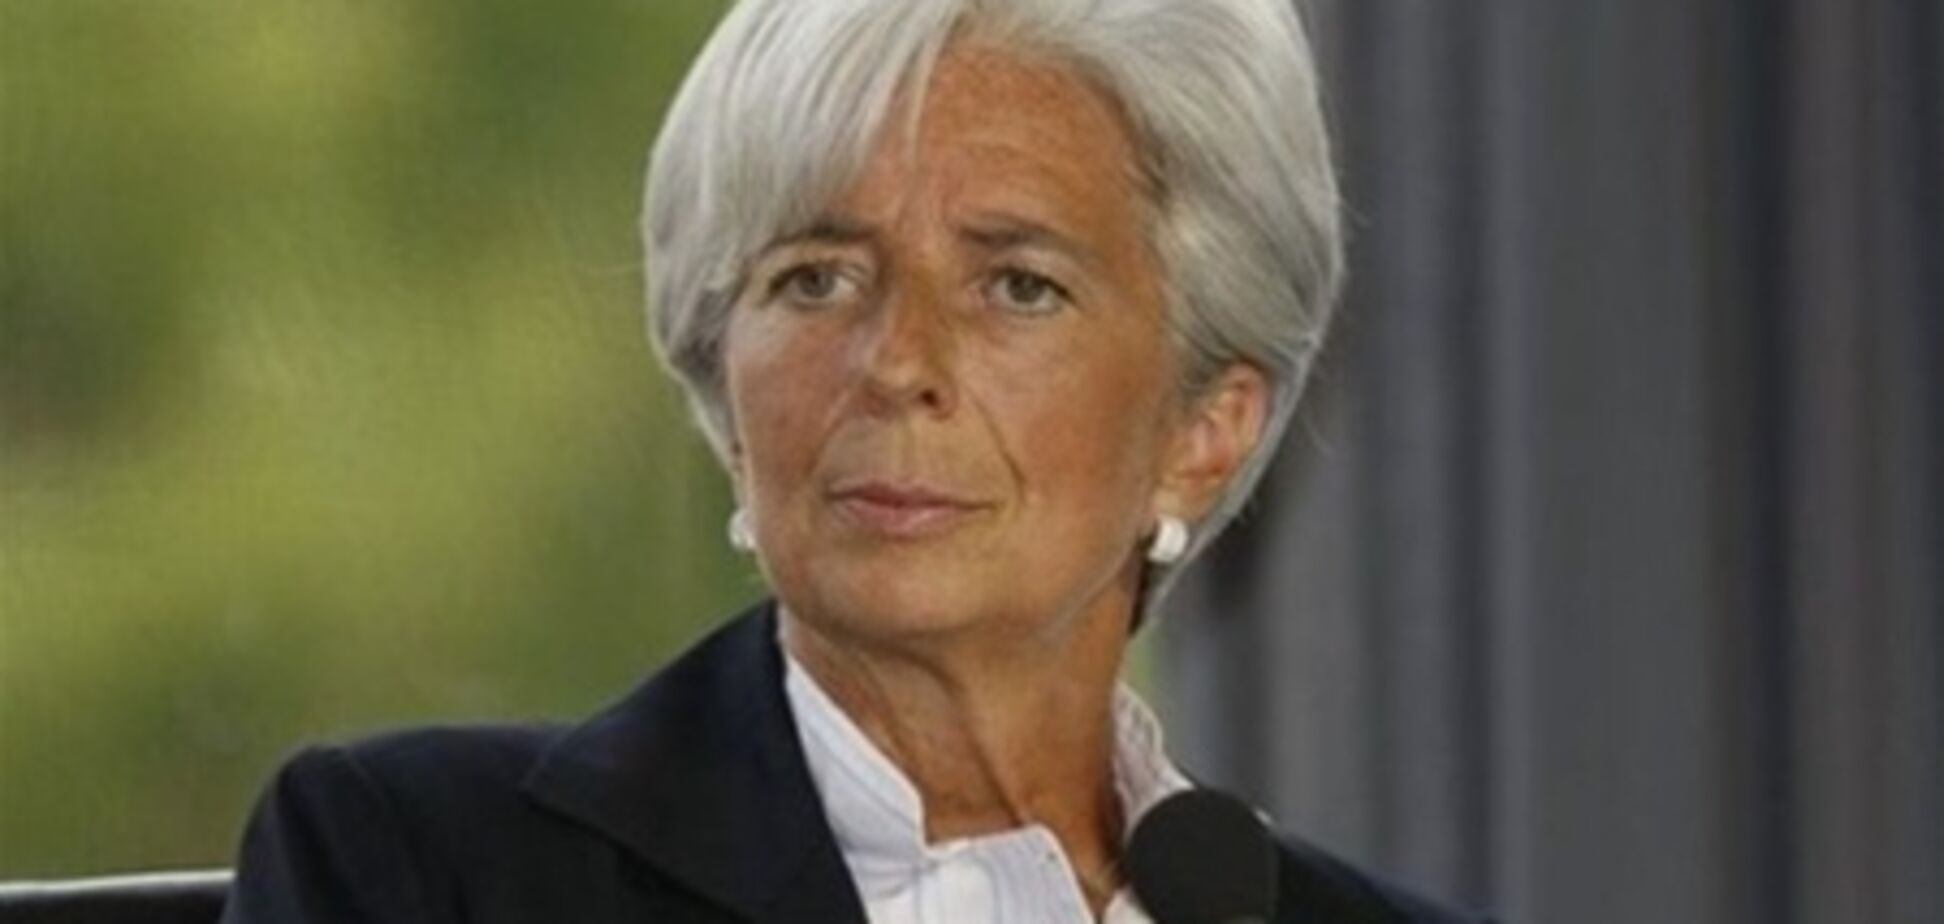 Во Франции задержали судью по делу главы МВФ